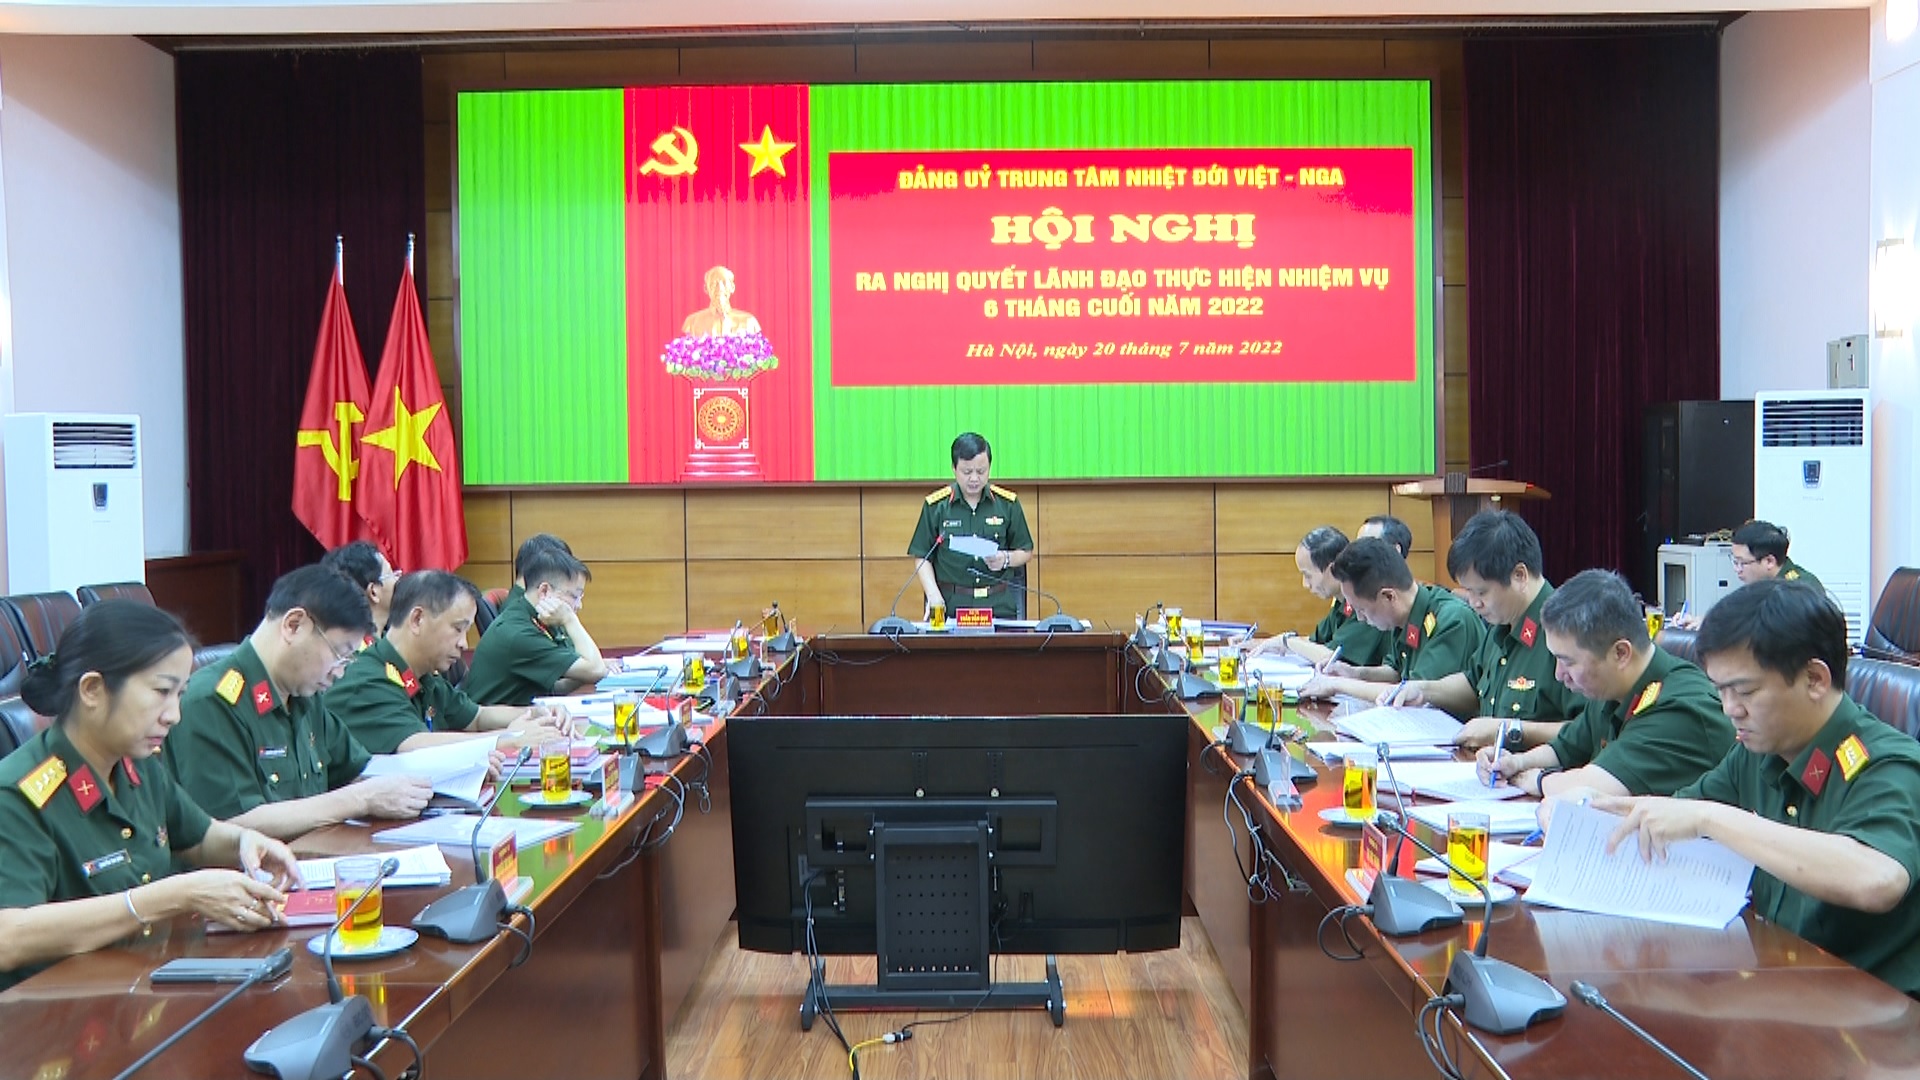 Đảng uỷ Trung tâm Nhiệt đới Việt – Nga ra nghị quyết lãnh đạo thực hiện nhiệm vụ 6 tháng cuối năm 2022